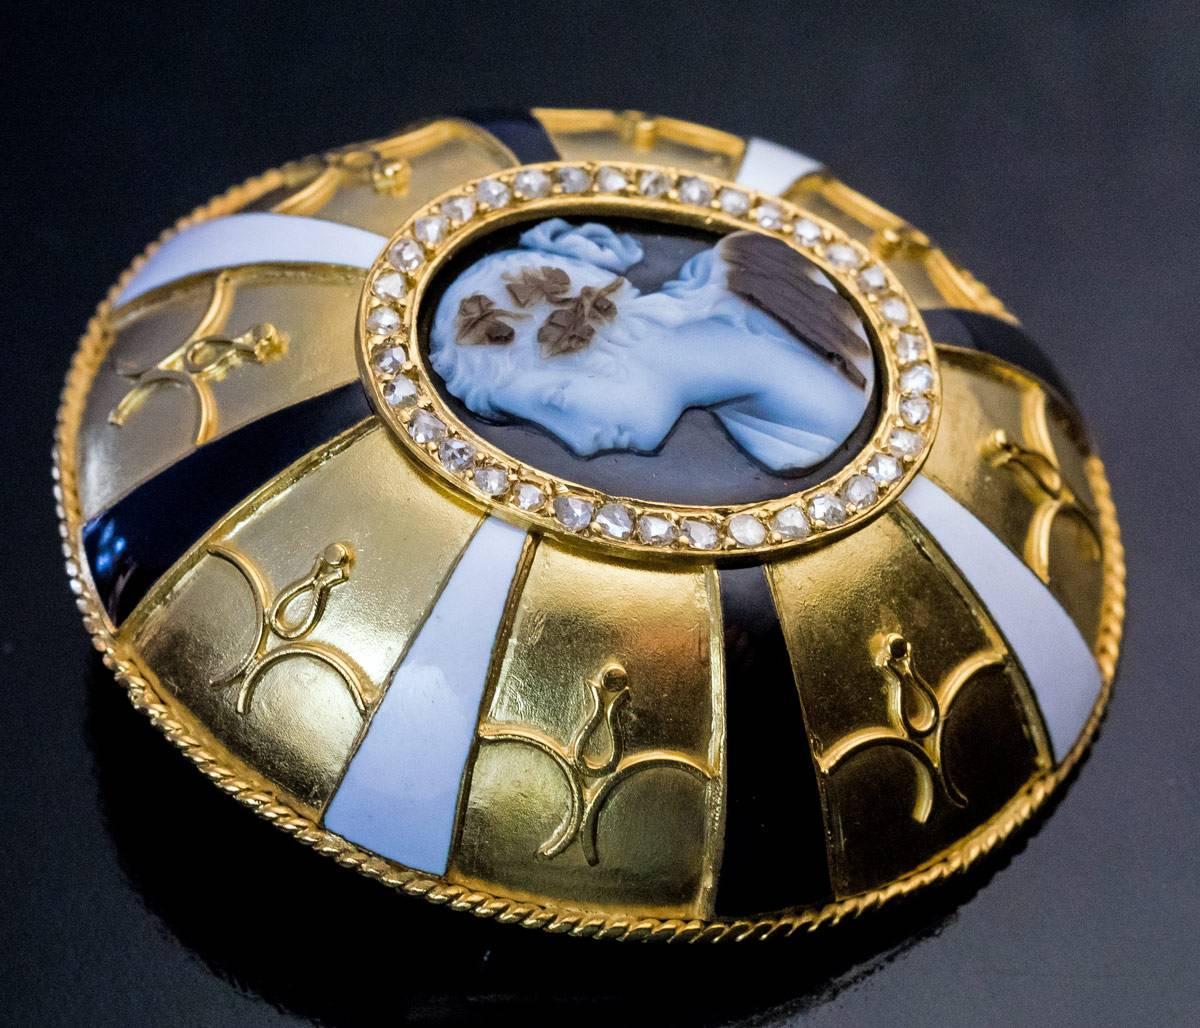 CIRCA 1880

Eine große Brosche aus mattem 18-karätigem Gold im Renaissance-Stil zeigt in der Mitte eine geschnitzte Achatkamee mit einer weiblichen Büste im Profil, die von zahlreichen Diamanten im Rosenschliff umrahmt und von filigranen goldenen